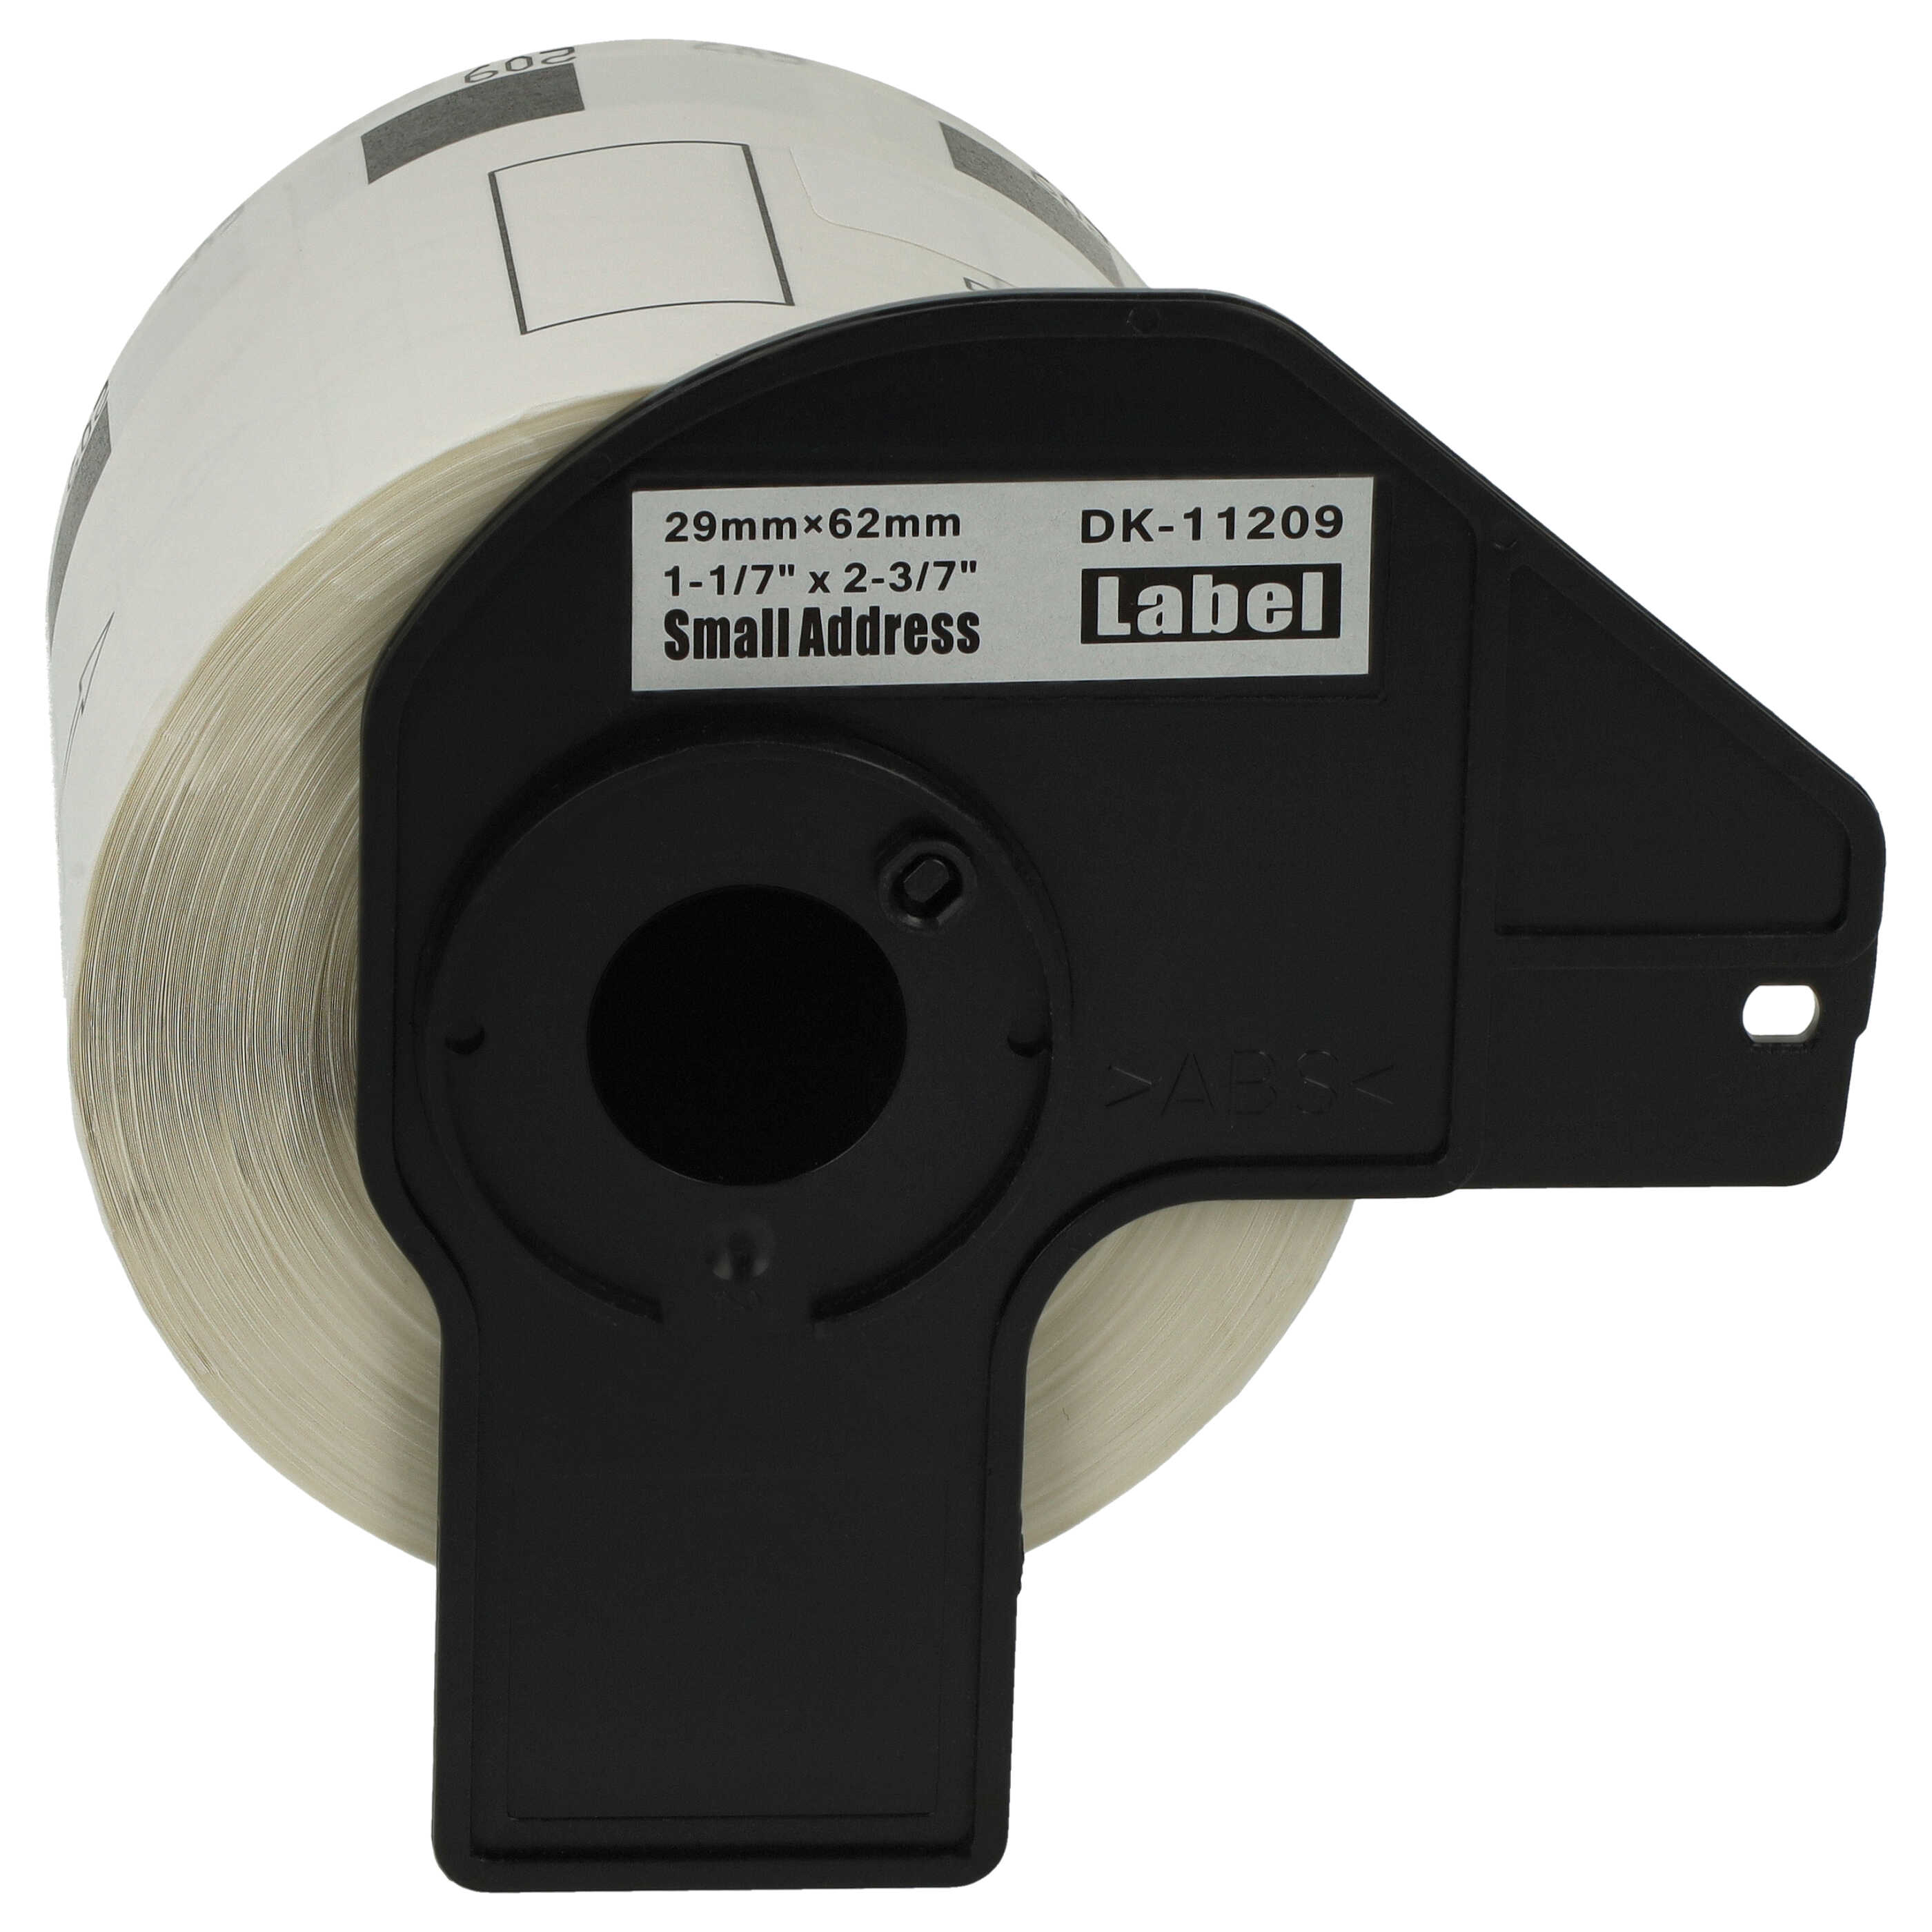 Rotolo etichette sostituisce Brother DK-11209 per etichettatrice - Premium 62mm x 29mm + supporto